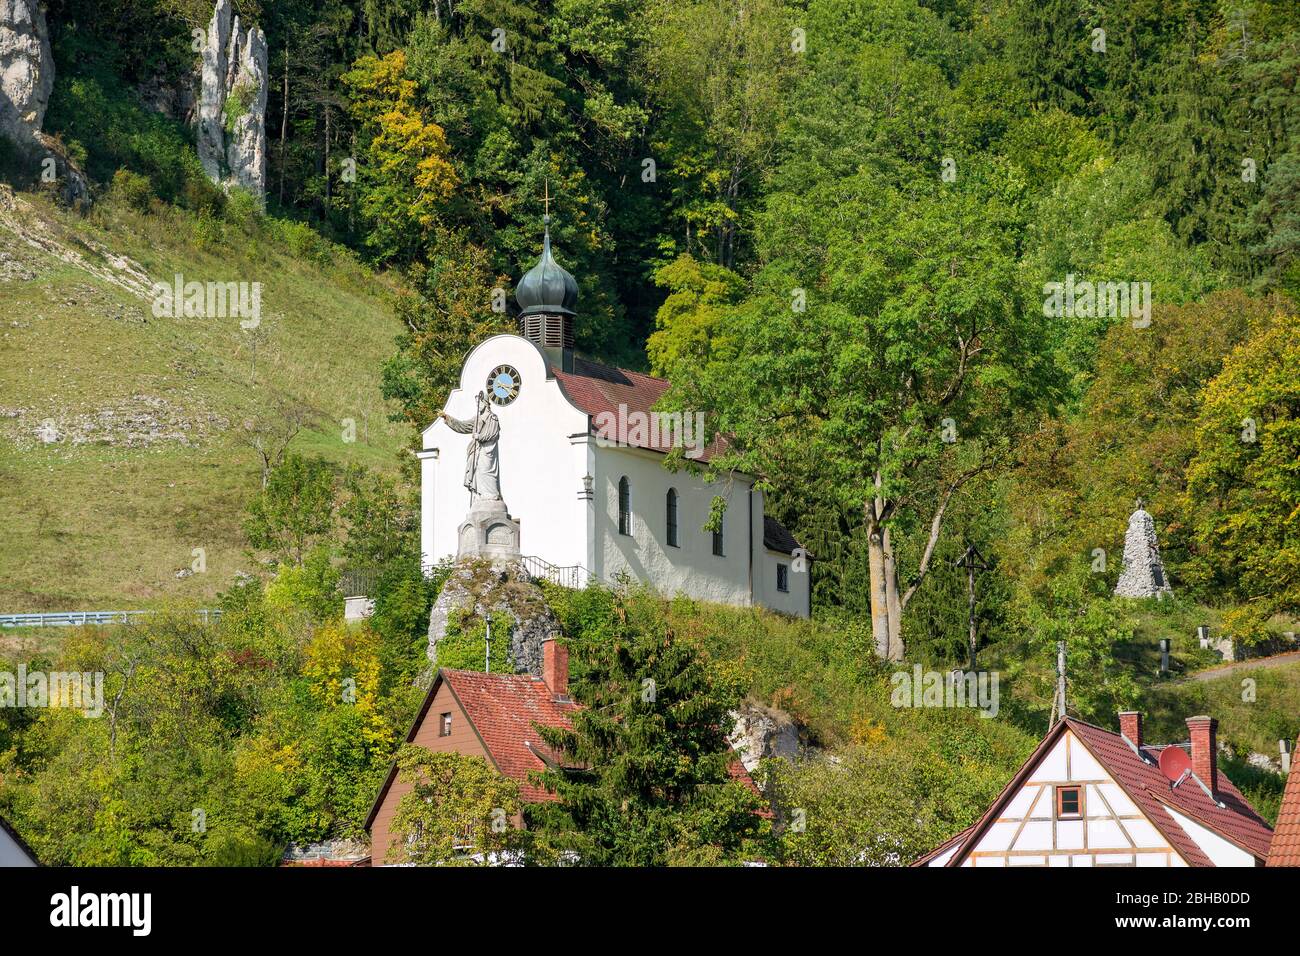 Germania, Baden-Württemberg, Schelklingen - Huts, vista dal fondo della valle al 1717/19 costruita 'Cappella alla dolorosa Madre di Dio' con la statua del 'buon Pastore' Foto Stock